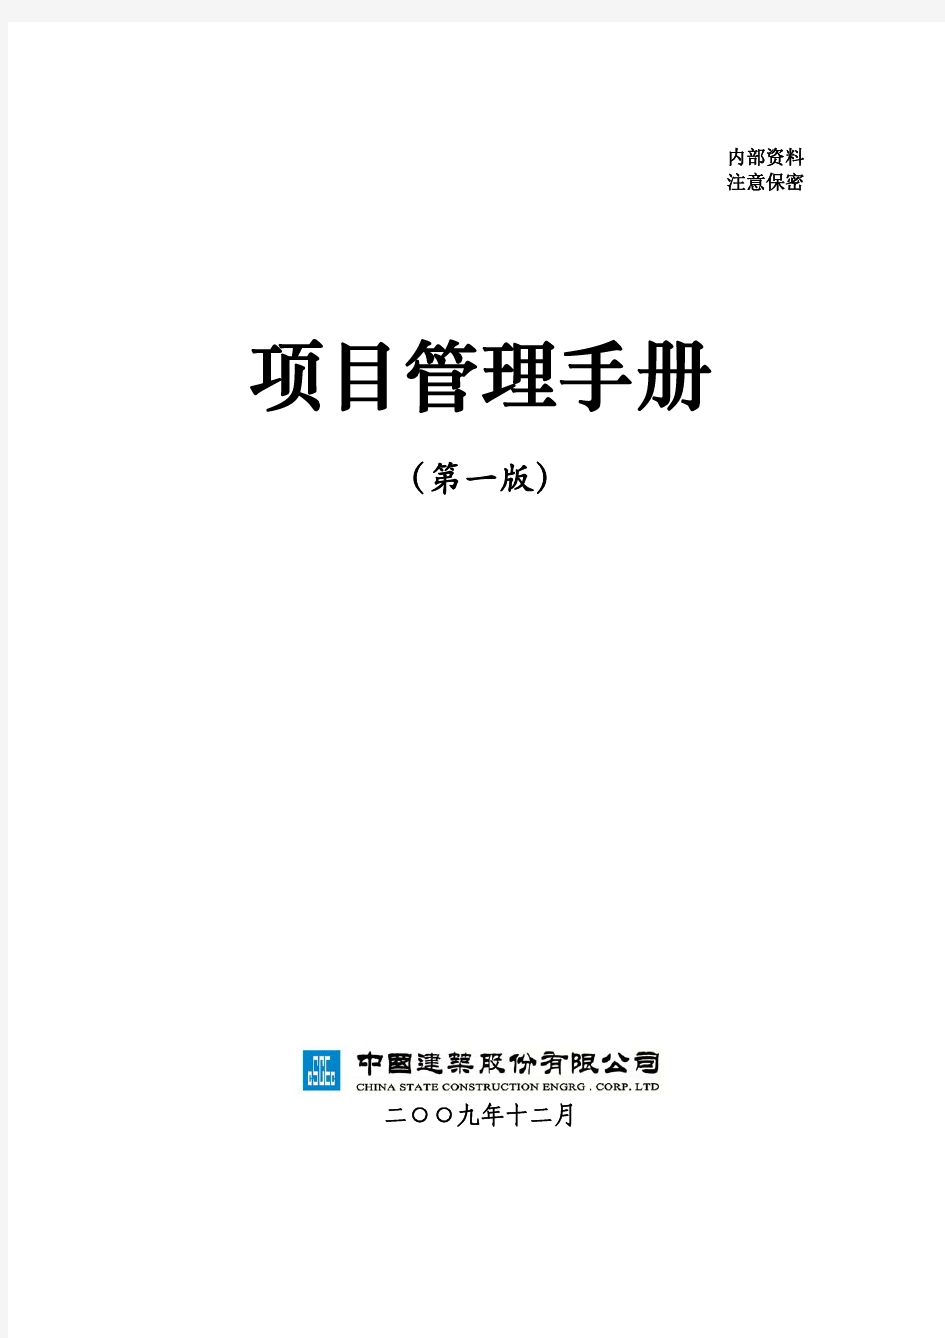 中国建筑公司 项目管理手册 